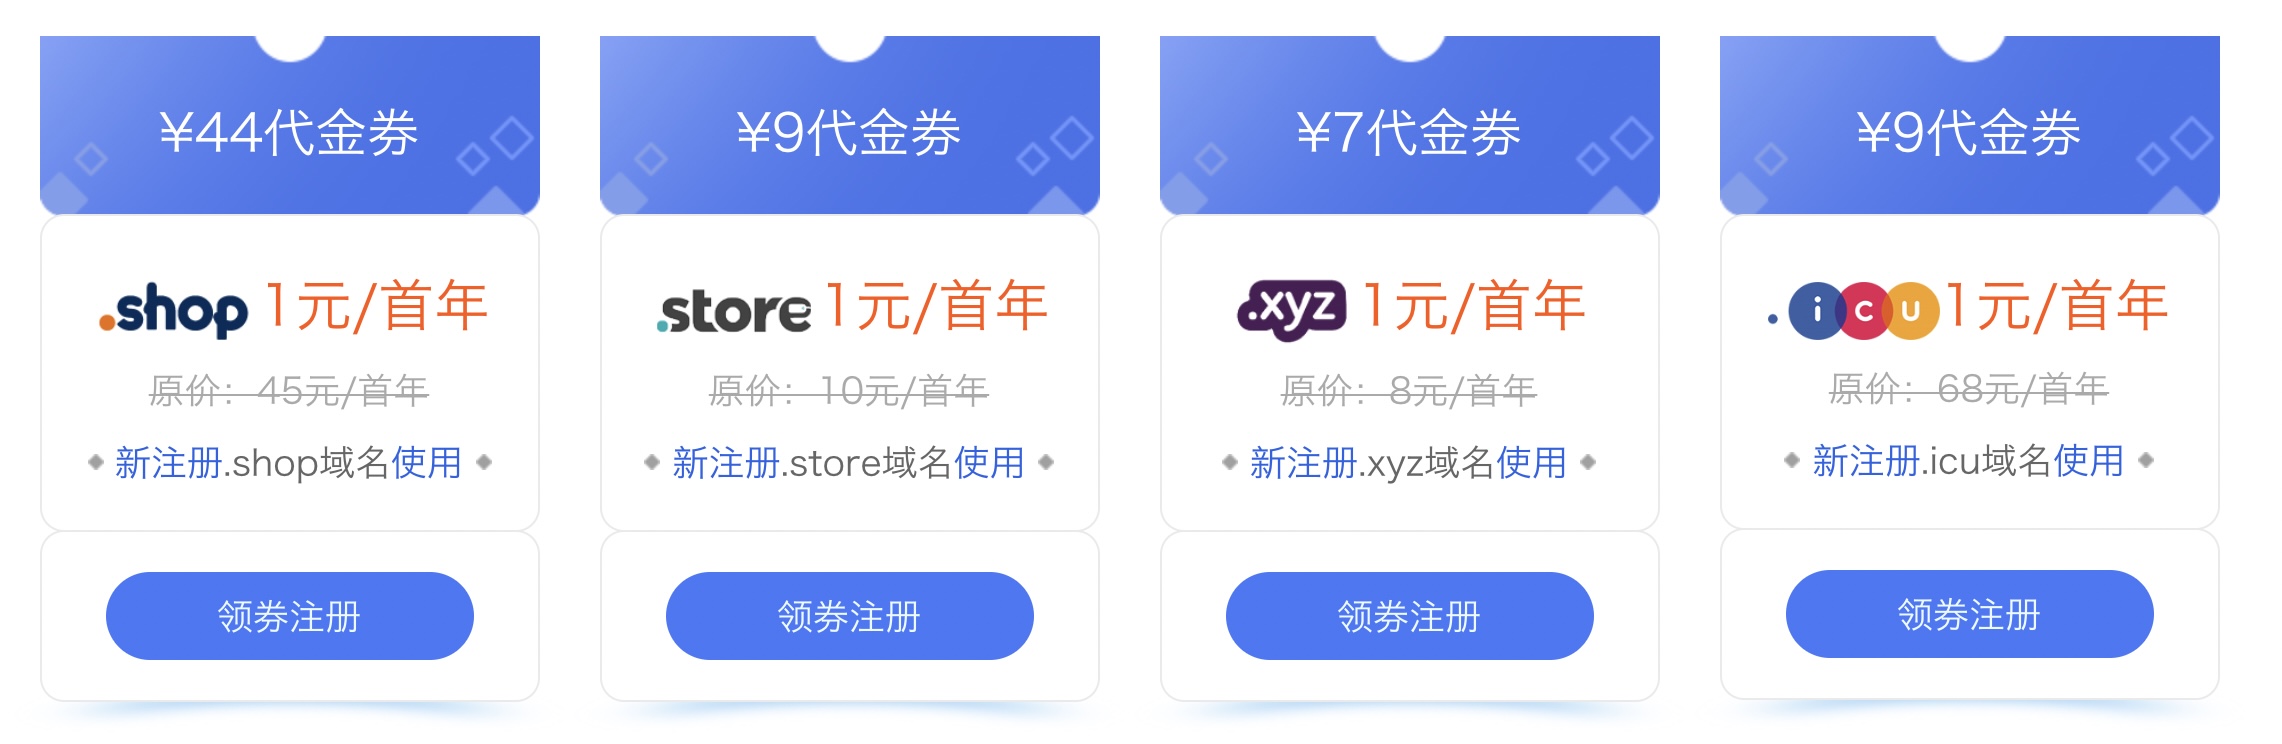 西部数码域名特惠：域名注册低至1元，.COM首年47元，.CN首年16元！